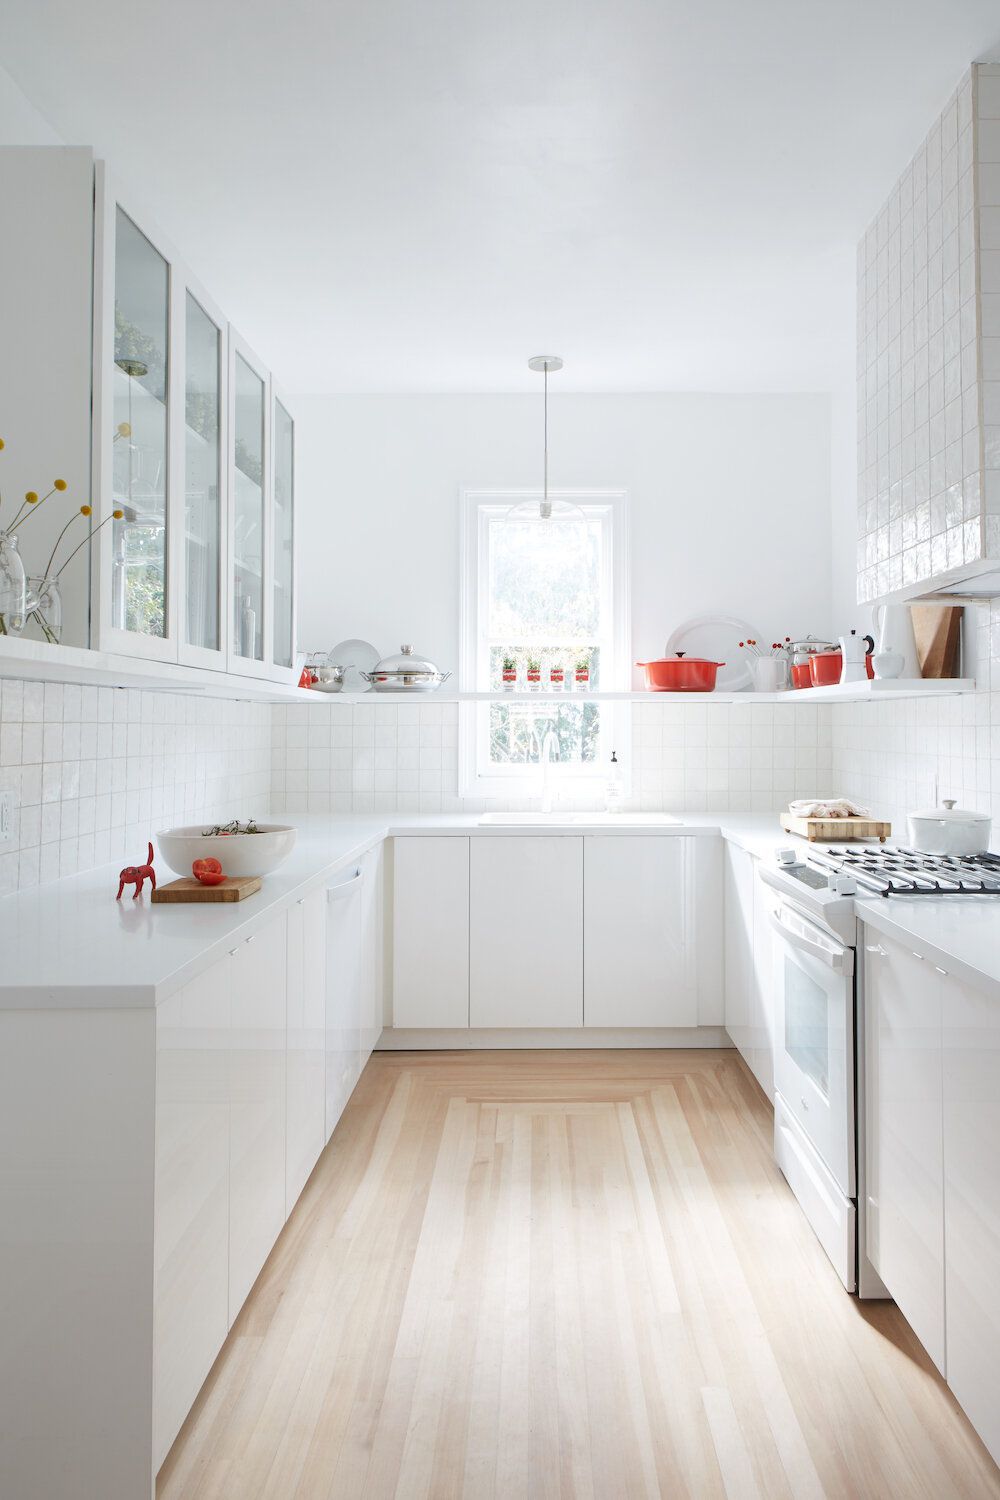 zellige tile backsplash with white cabinets